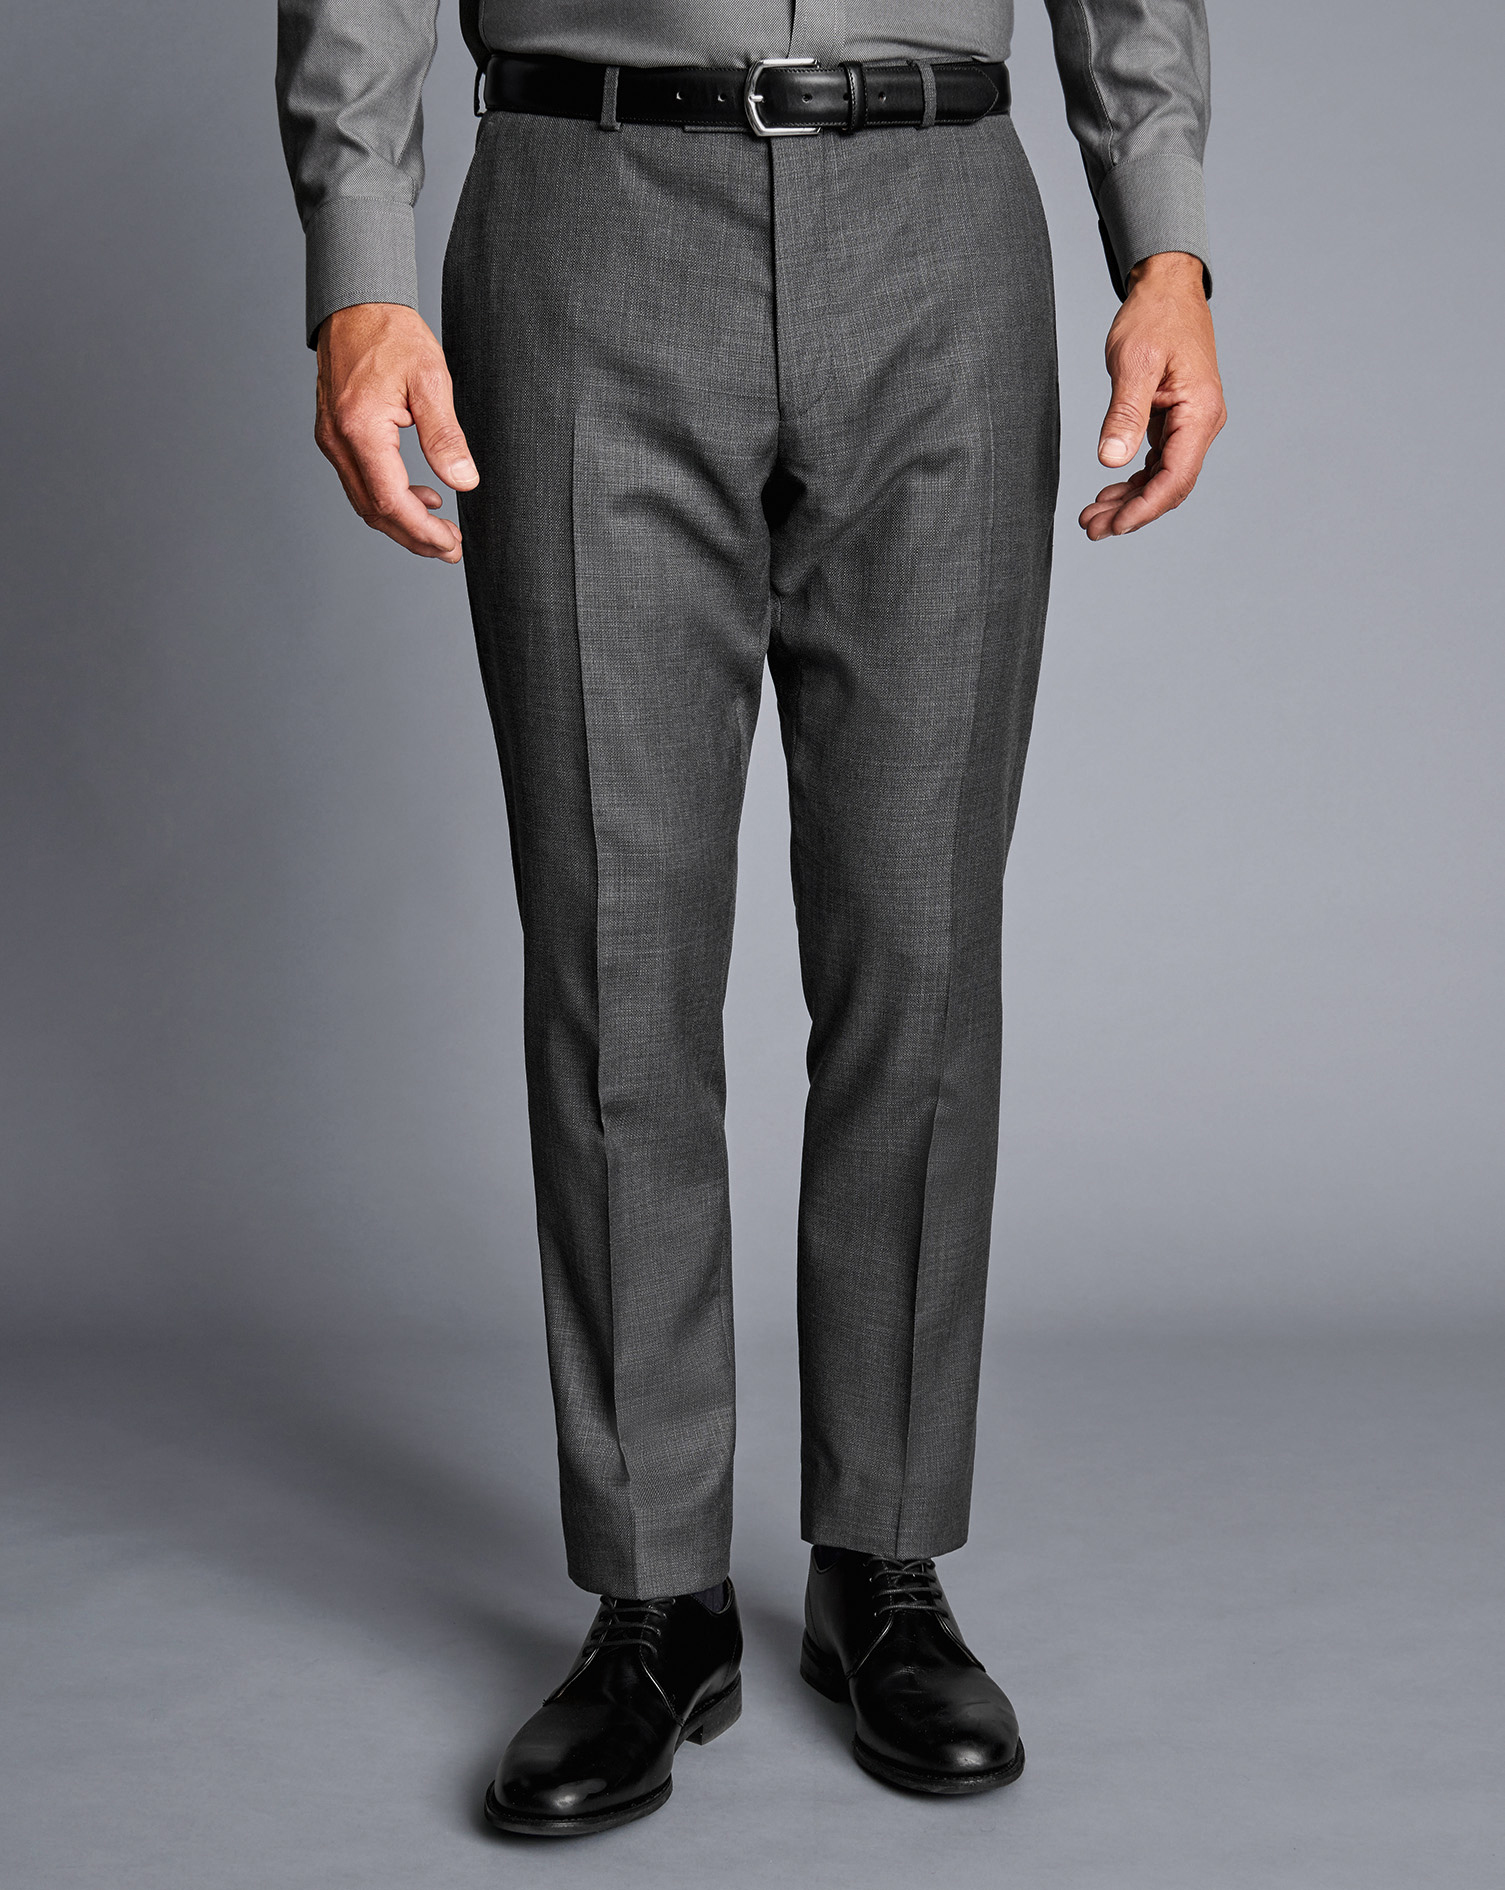 Men's Charles Tyrwhitt Italian Luxury Suit Trousers - Grey Size 30/32 Wool
